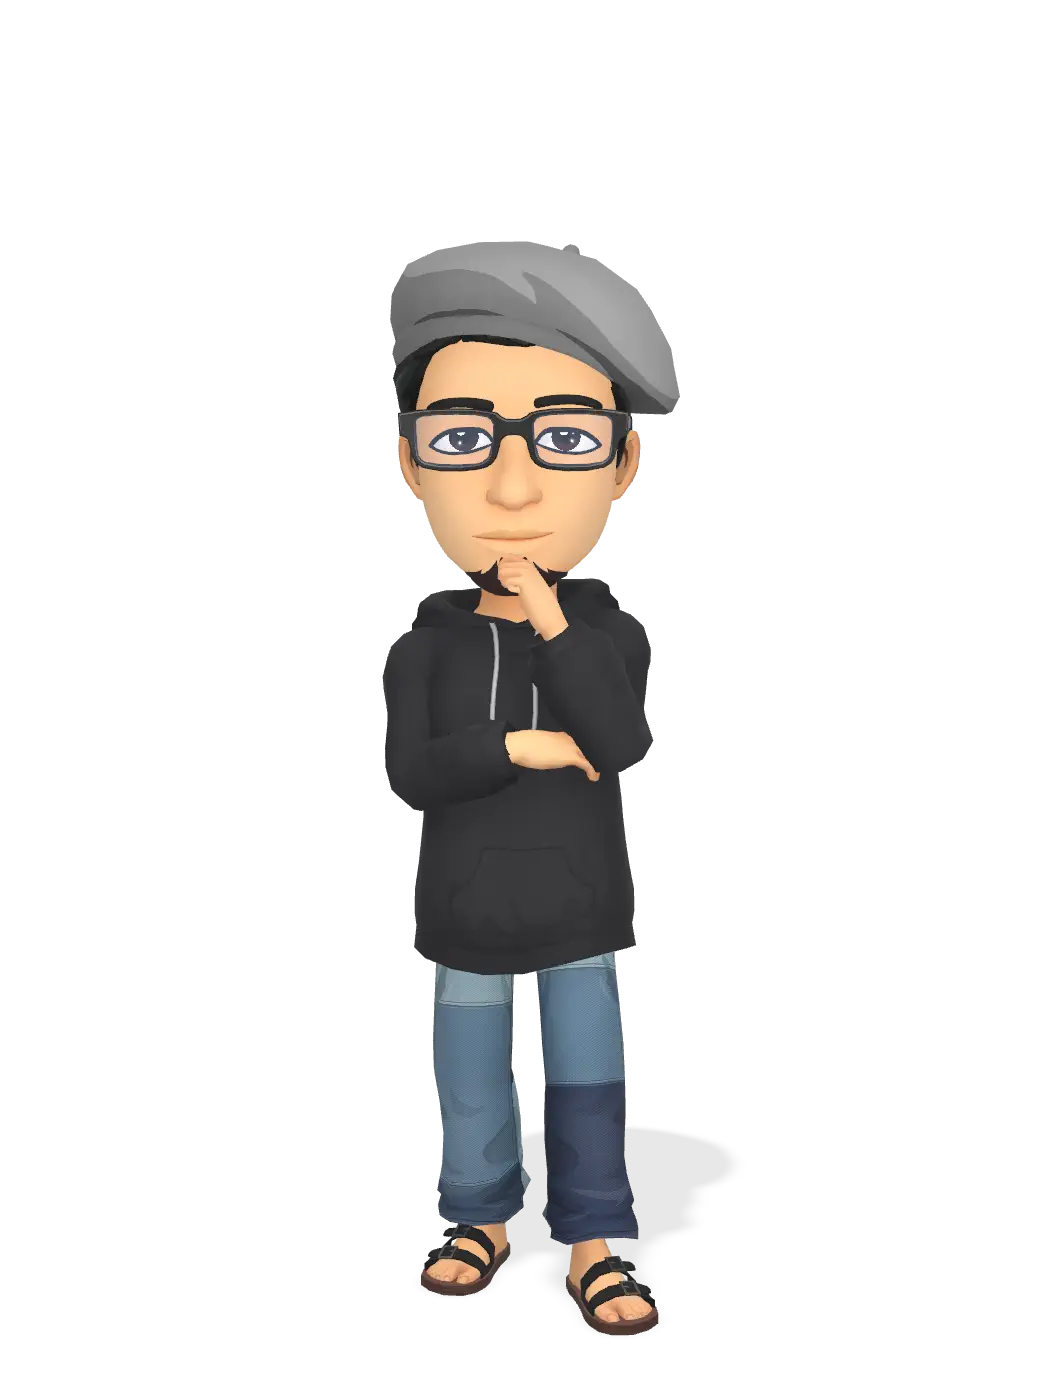 3D Bitmoji for blurwood avatar